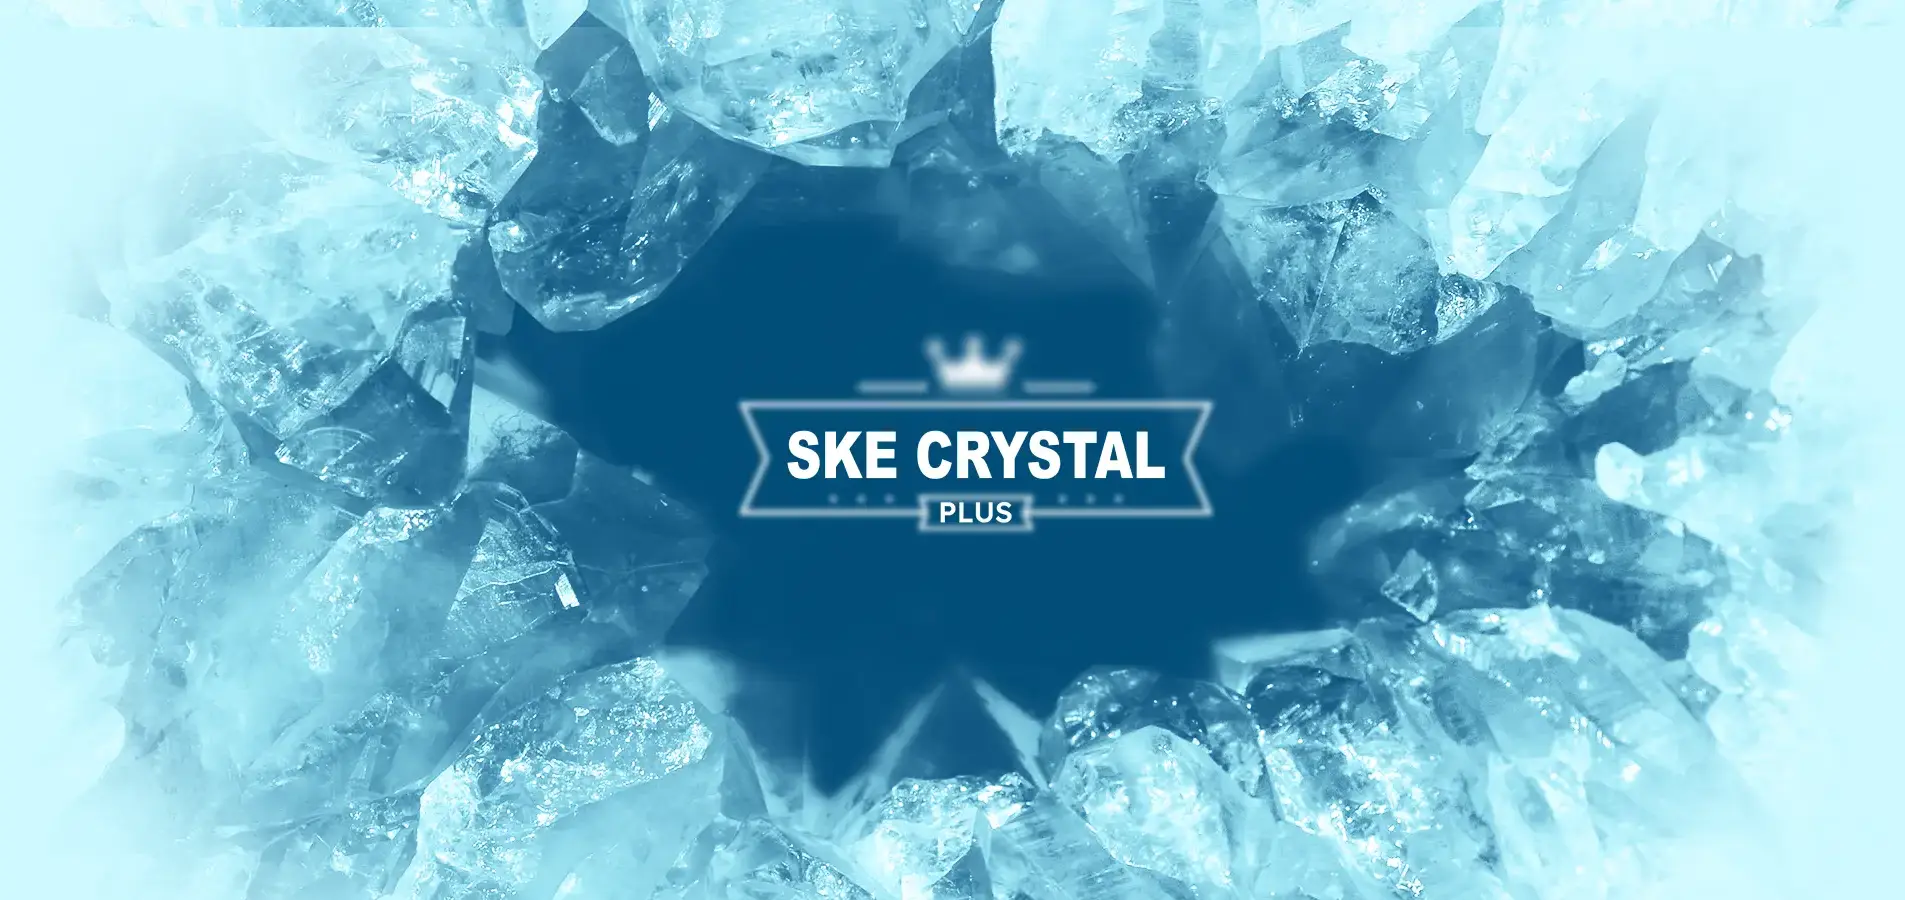 ske crystal plus